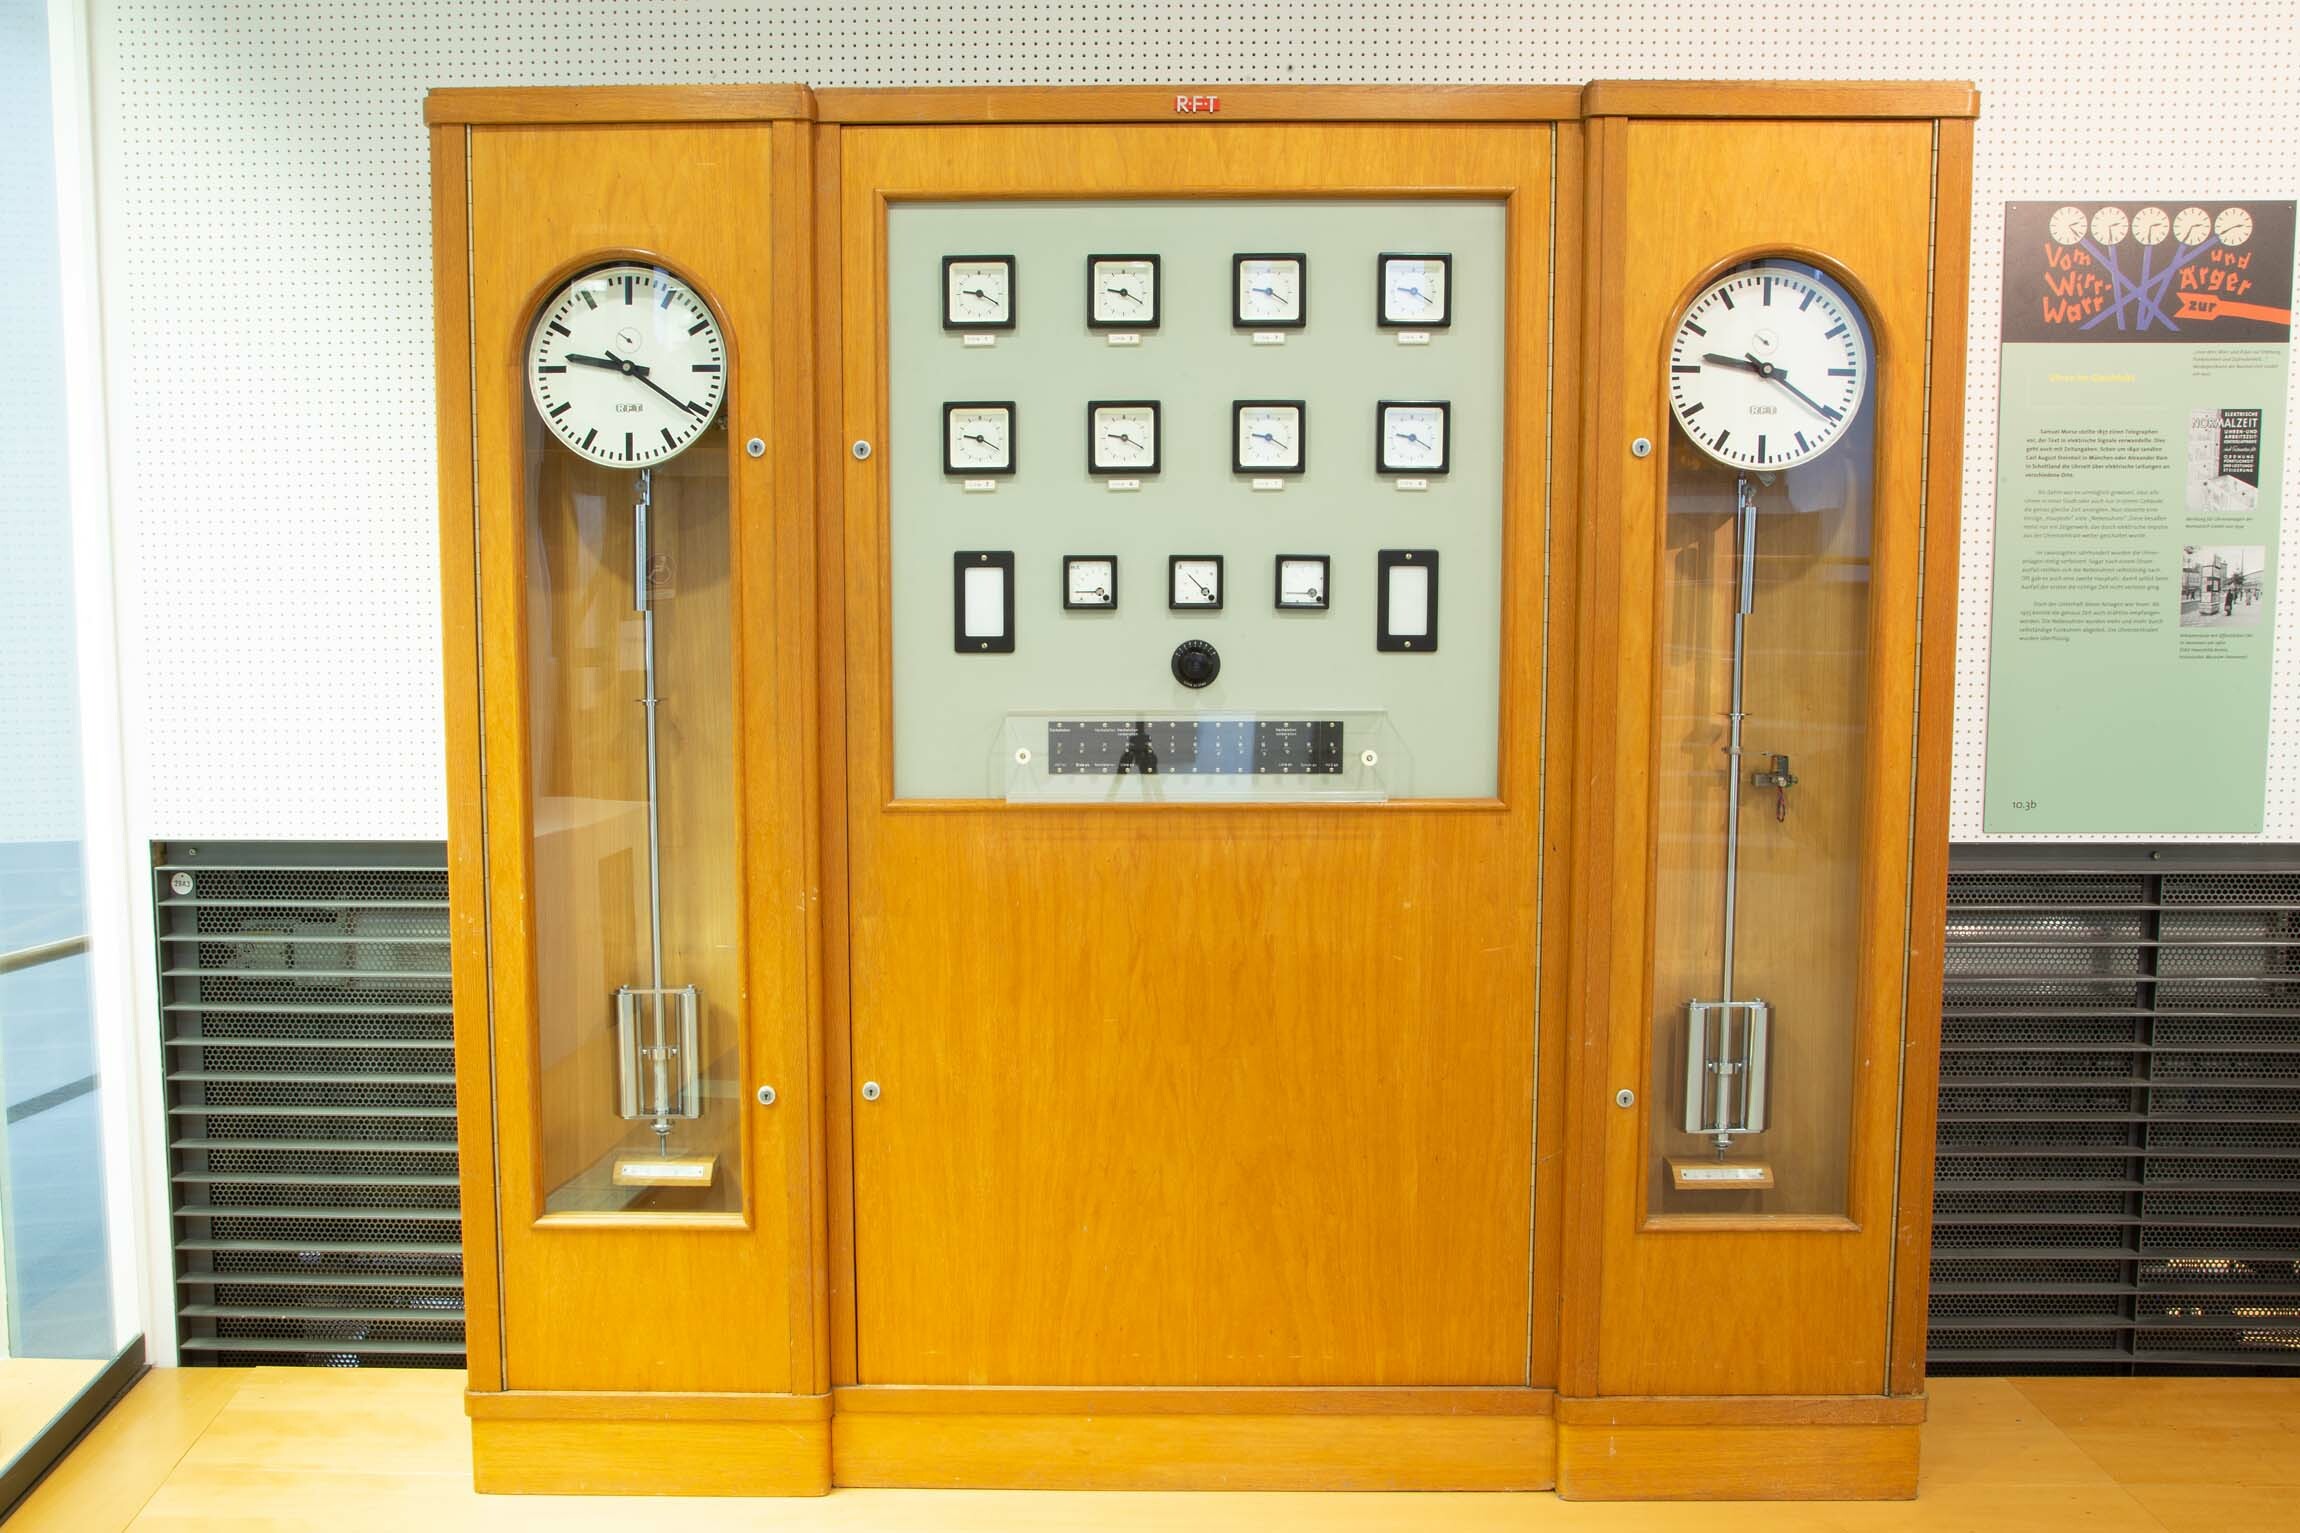 Zeitverteilungsanlage, RFT, Leipzig, 1969 (Deutsches Uhrenmuseum CC BY-SA)